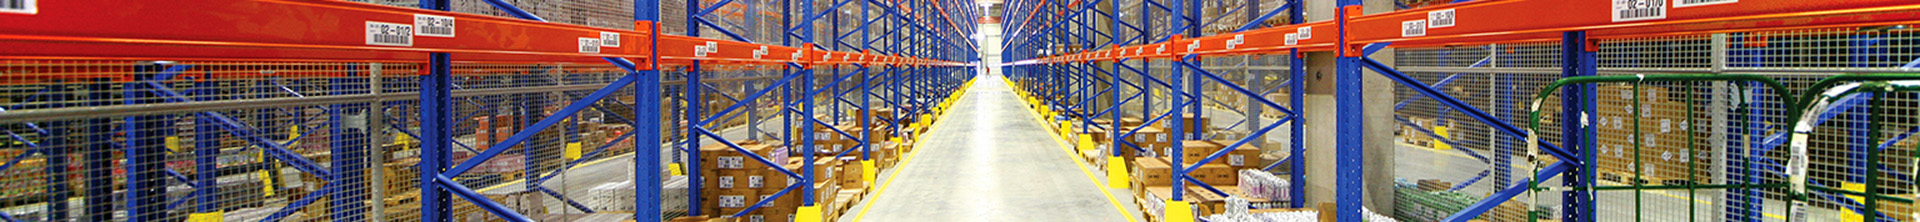 Soluções de limpeza de piso da Tennant para o setor de armazenamento e logística